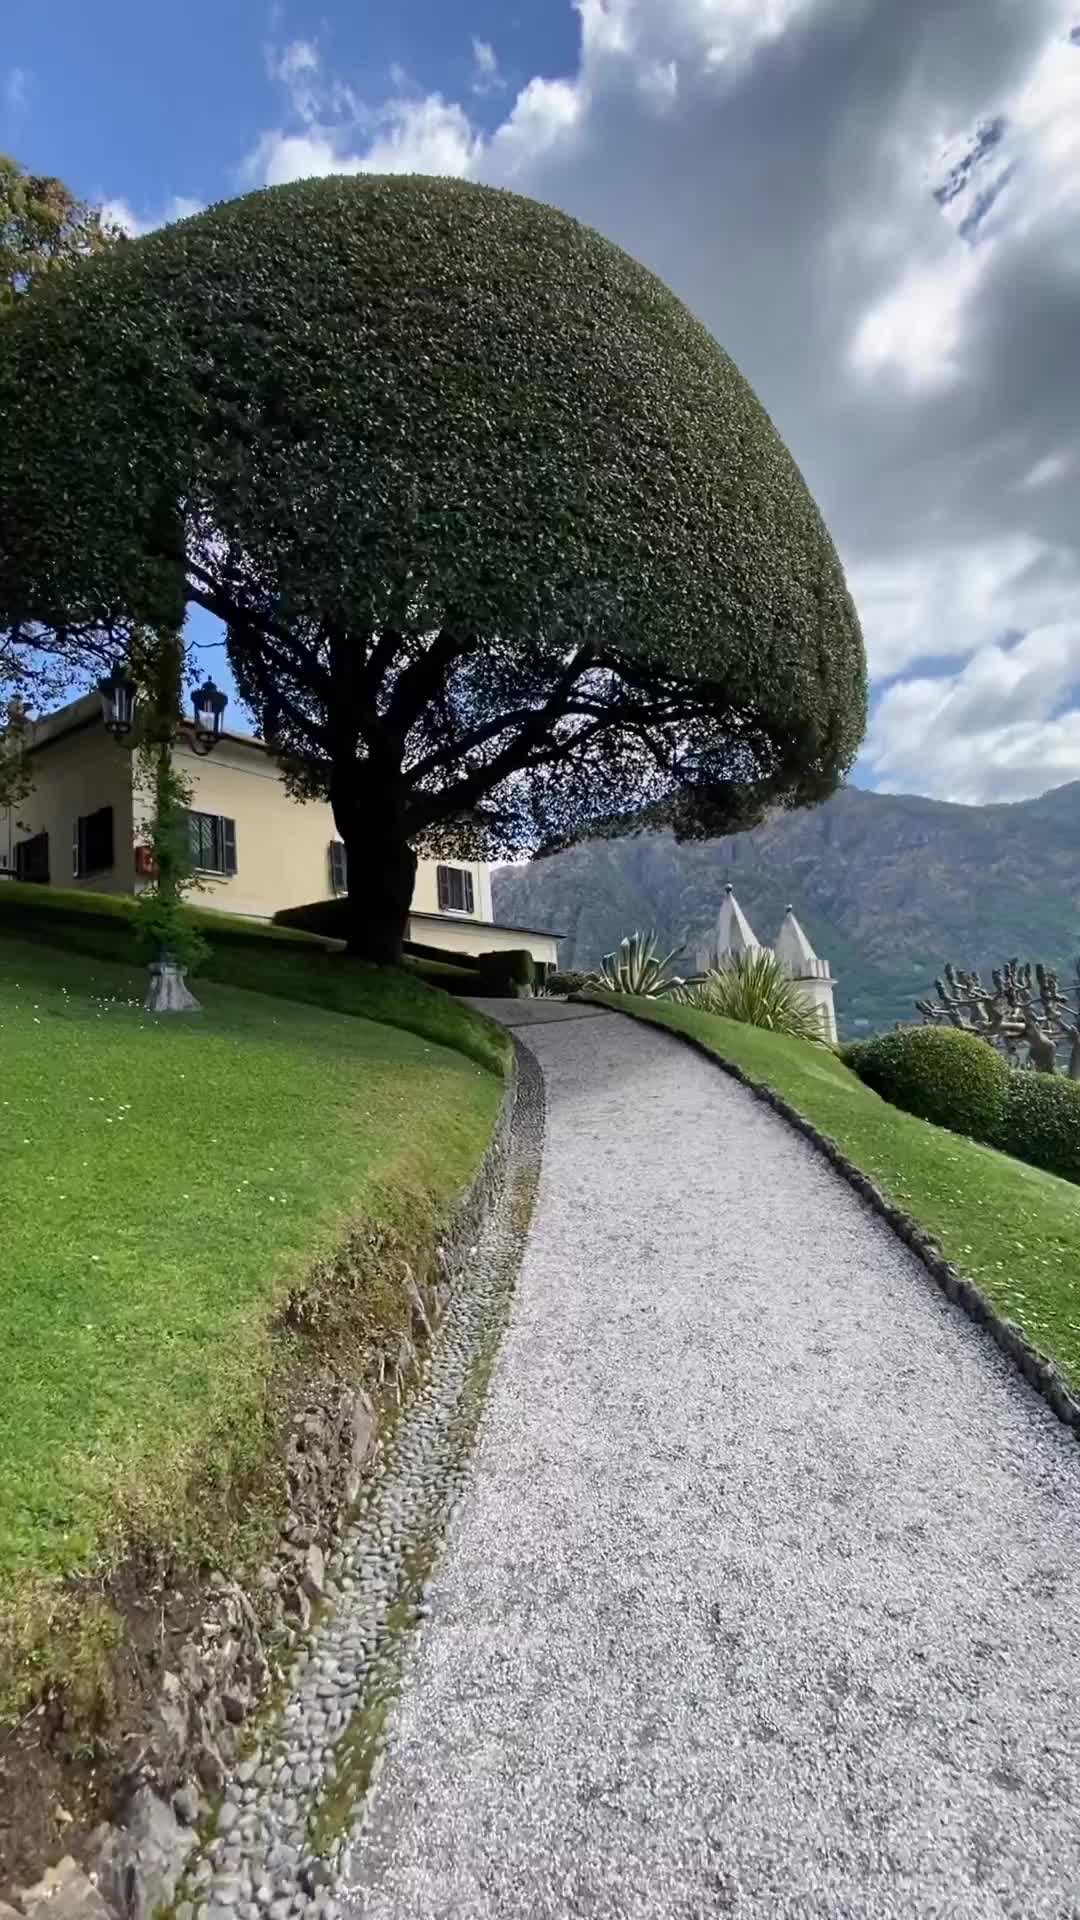 Stunning Villa del Balbianello in Lake Como, Italy